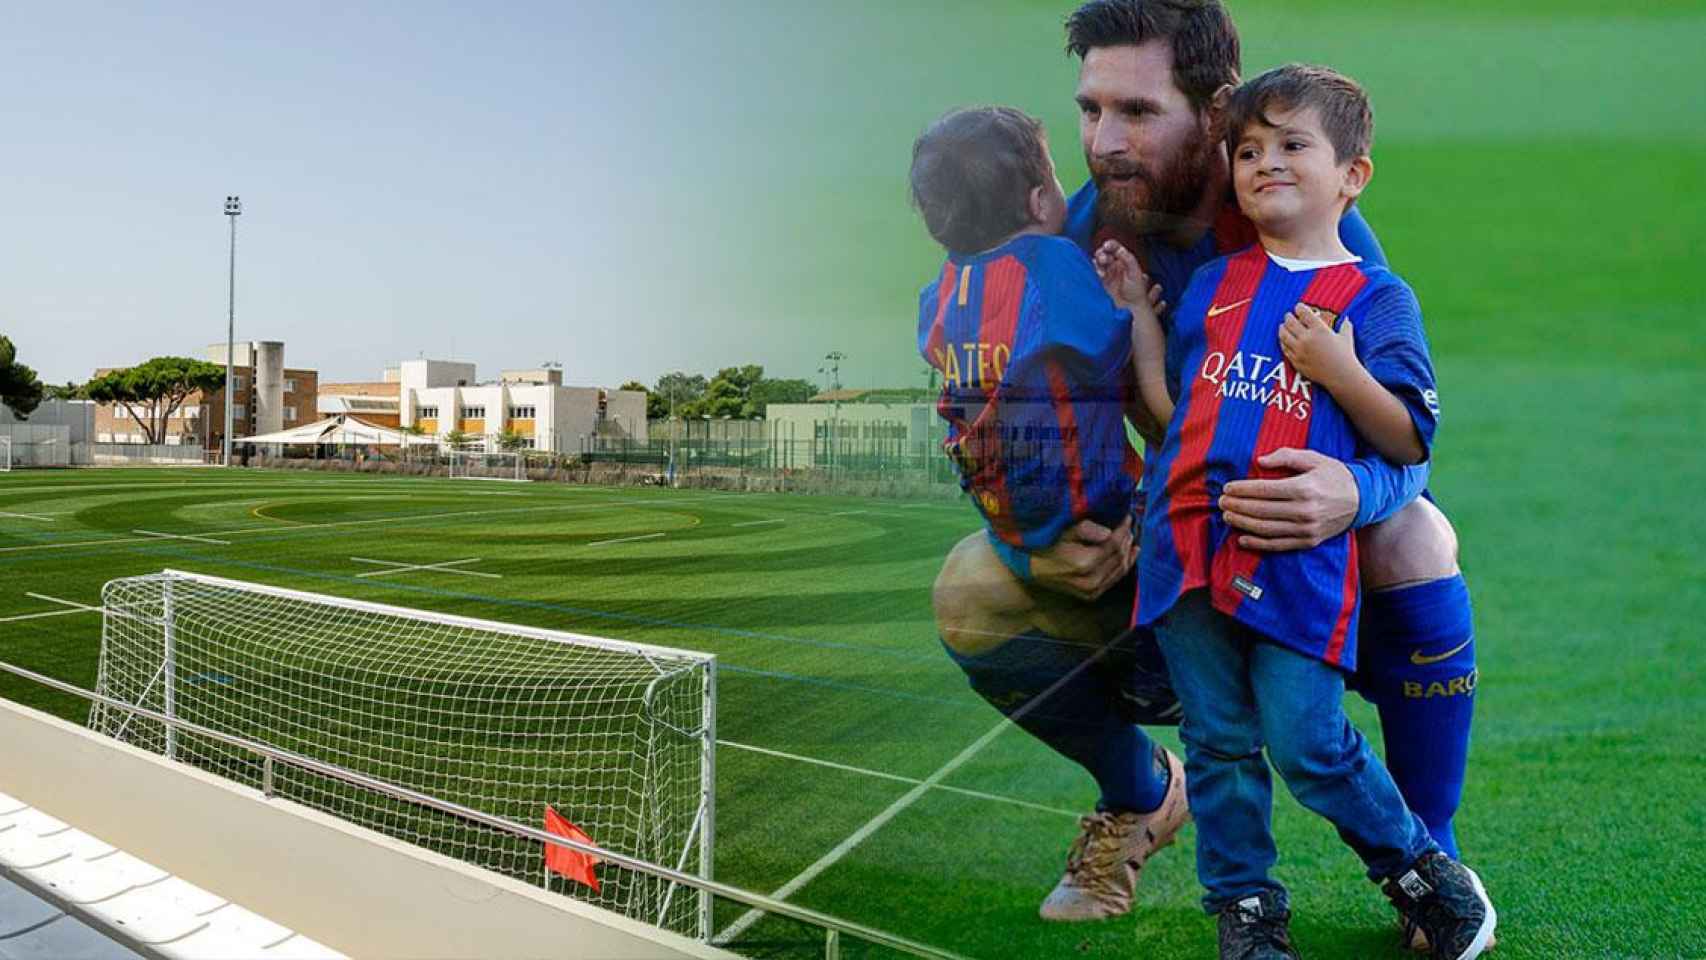 Imagen de Leo Messi con sus hijos y el campo de fútbol de la British School of Barcelona (BSB), del grupo Cognita / CG